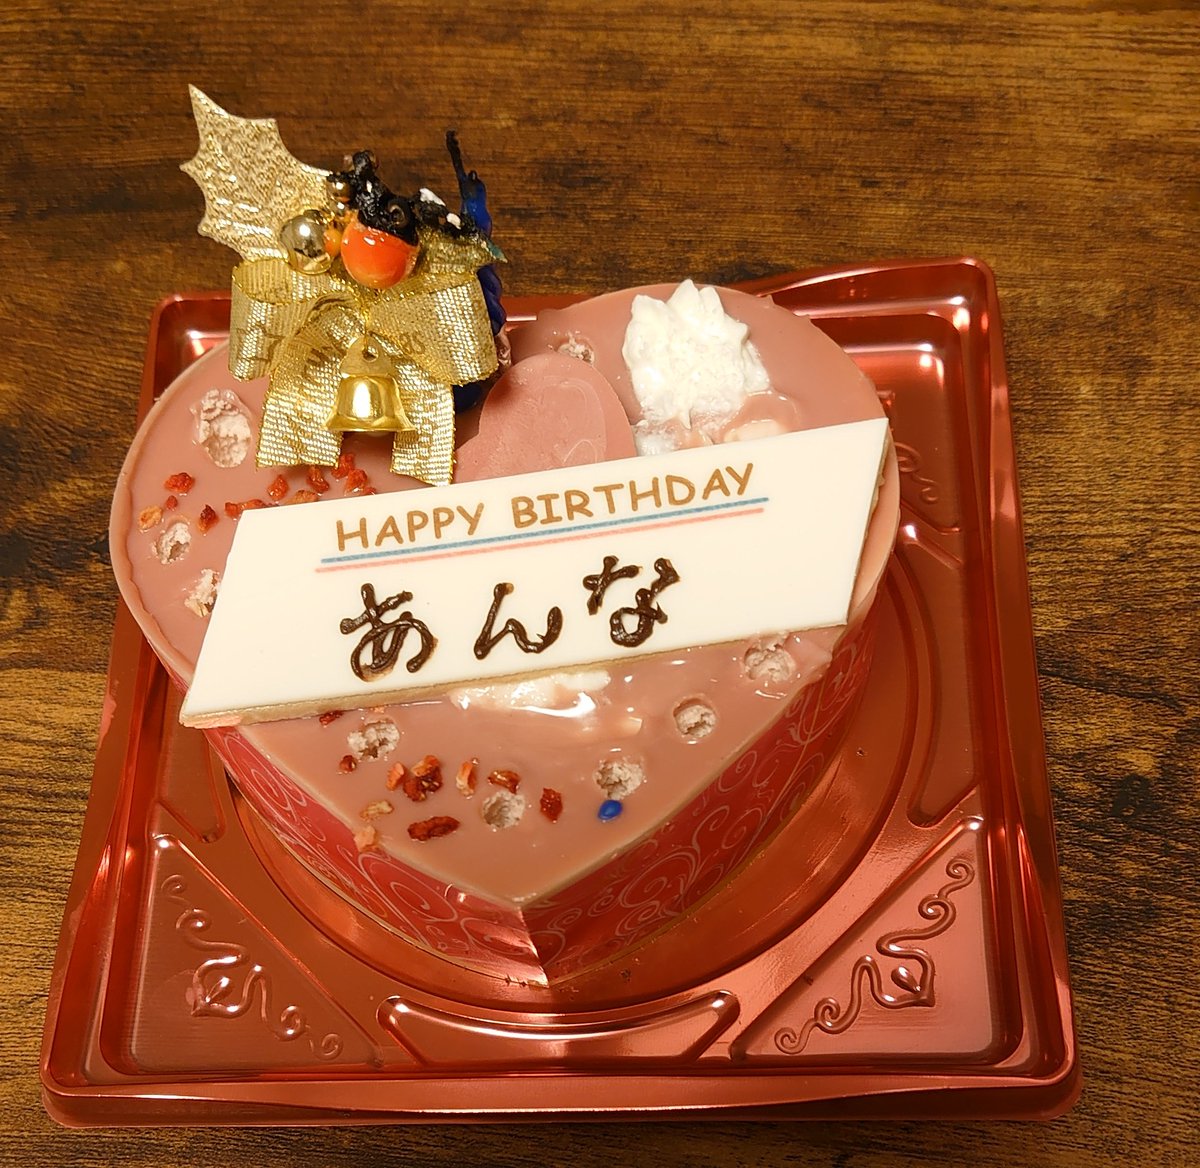 マジカルケンジィ Ants 杏ちゃん 19歳のお誕生日おめでとう ケーキ屋さんの店員さんに あんなちゃん お誕生日おめでとうございます って言われて照れました 浅野杏奈 浅野杏奈生誕祭